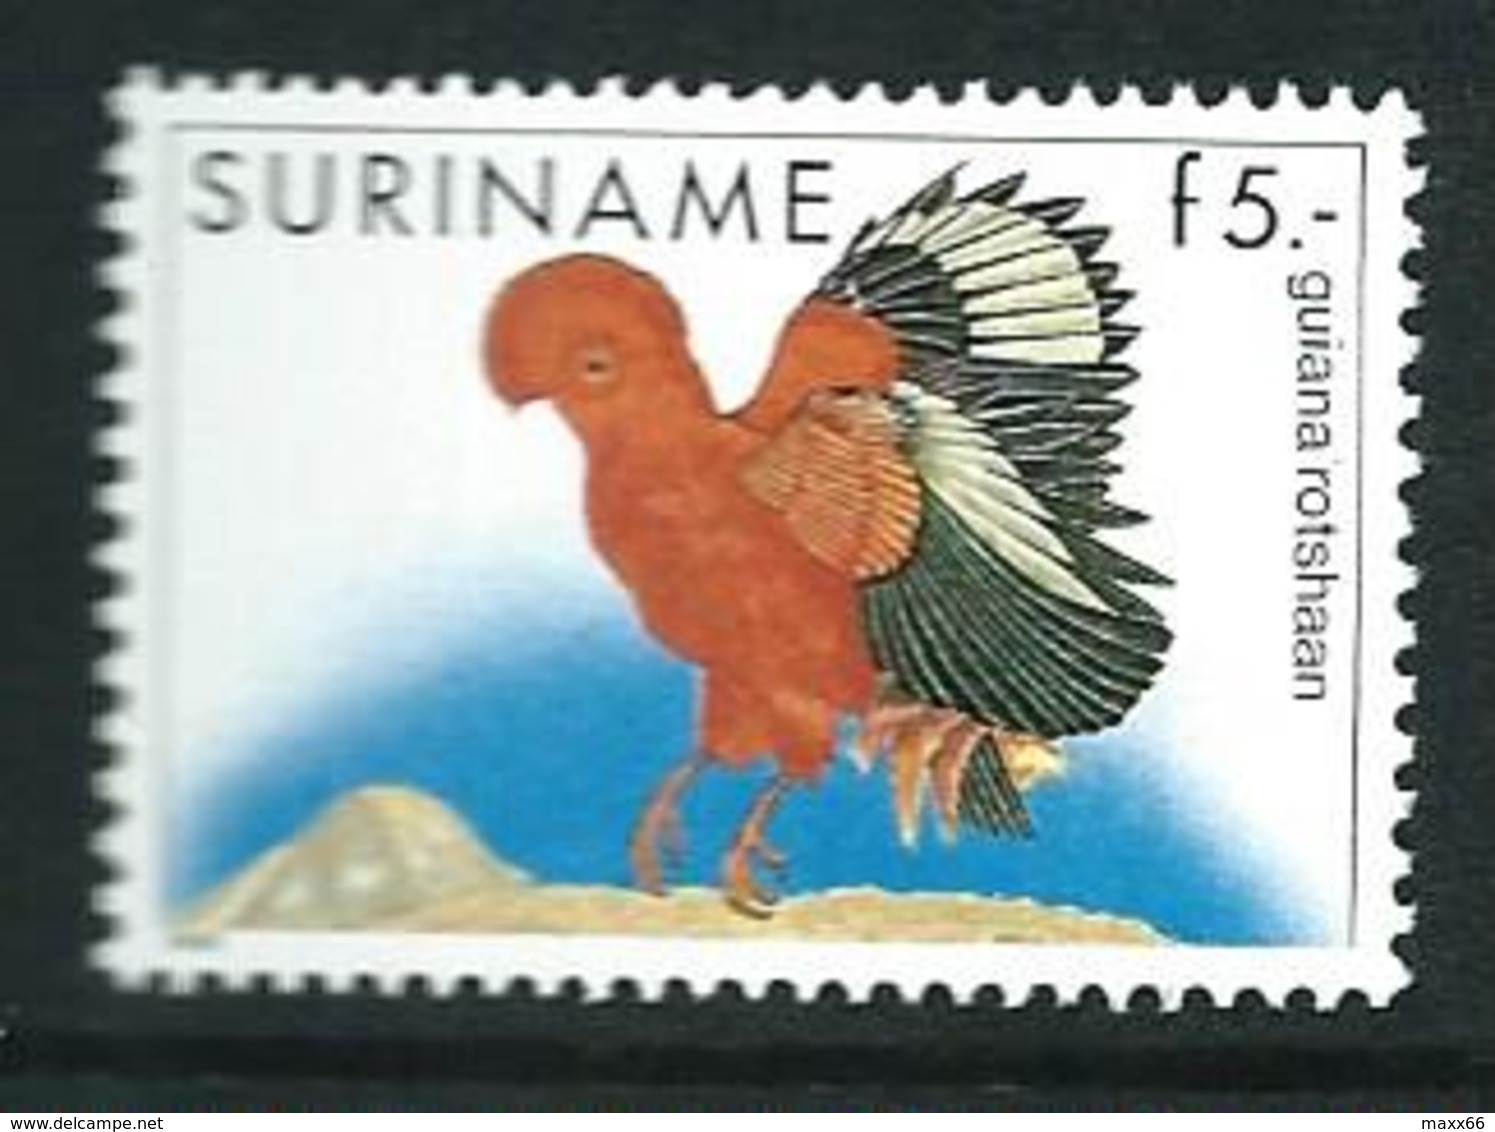 SURINAME MNH - 1986 Birds Rupicola Rupicola - 5 Guilder - Michel SR 1165 - Suriname